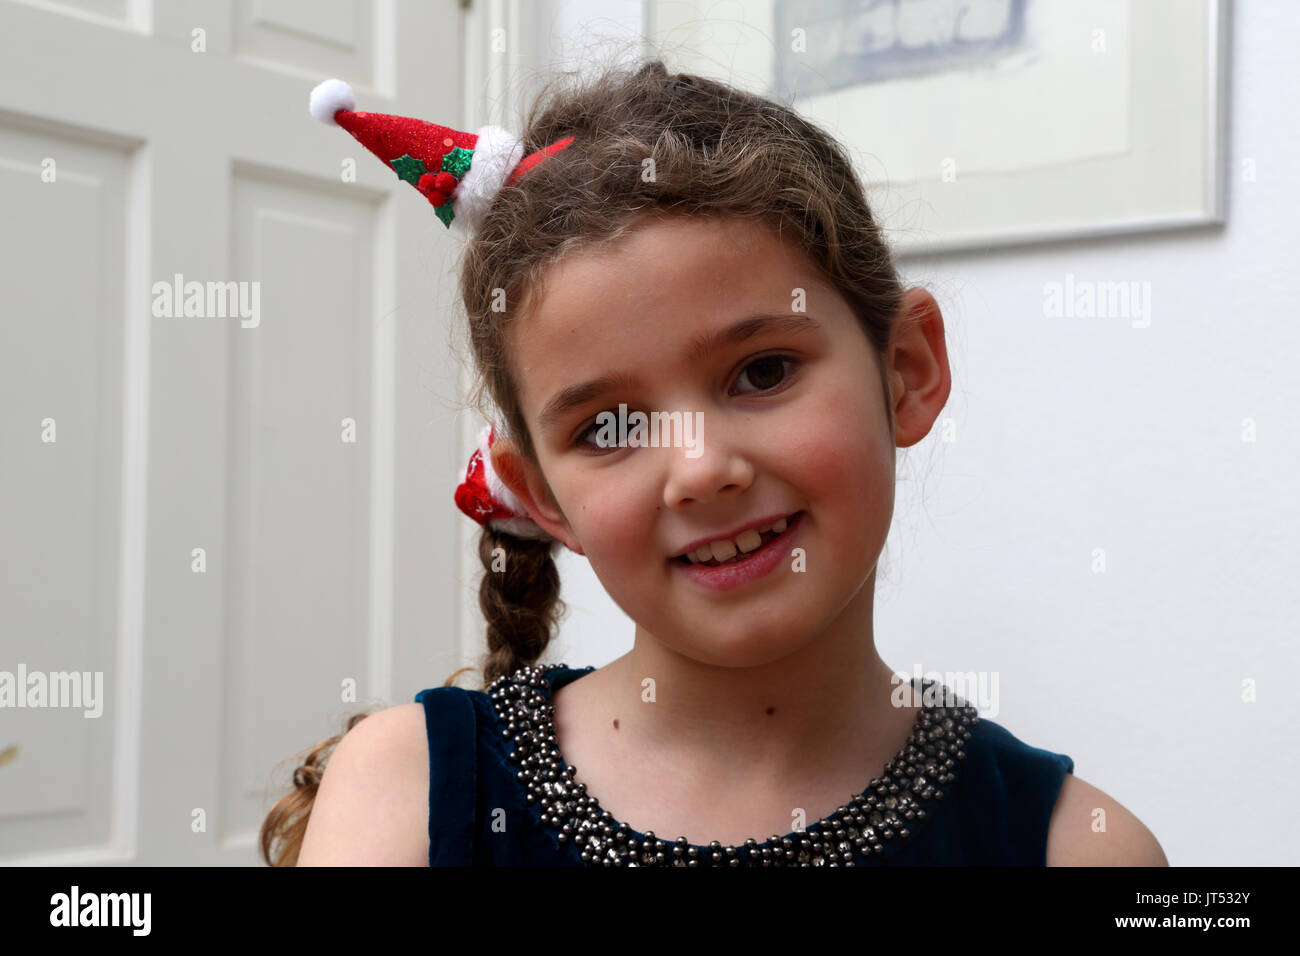 Portrait Von Madchen An Weihnachten Mit Festlichen Alice Band Im Haar Stockfotografie Alamy